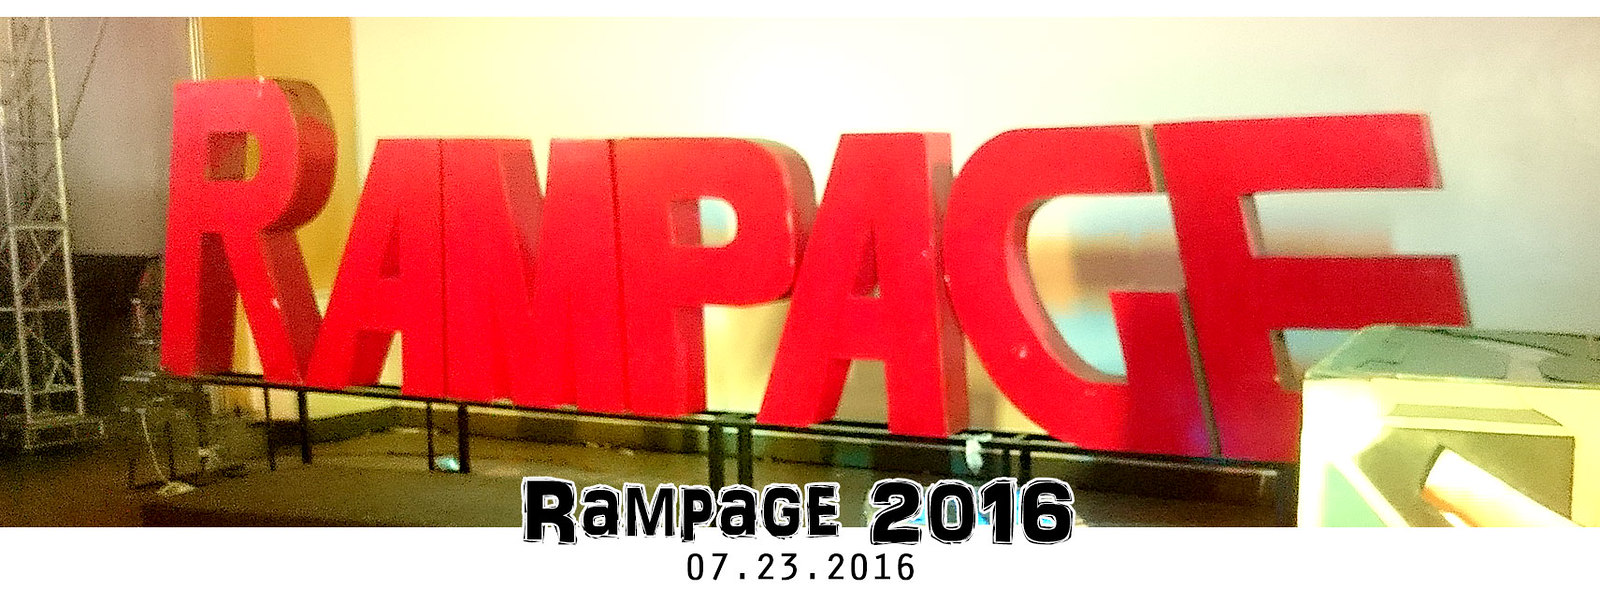 Rampage 2016 | #GGWPRAMPAGE2016